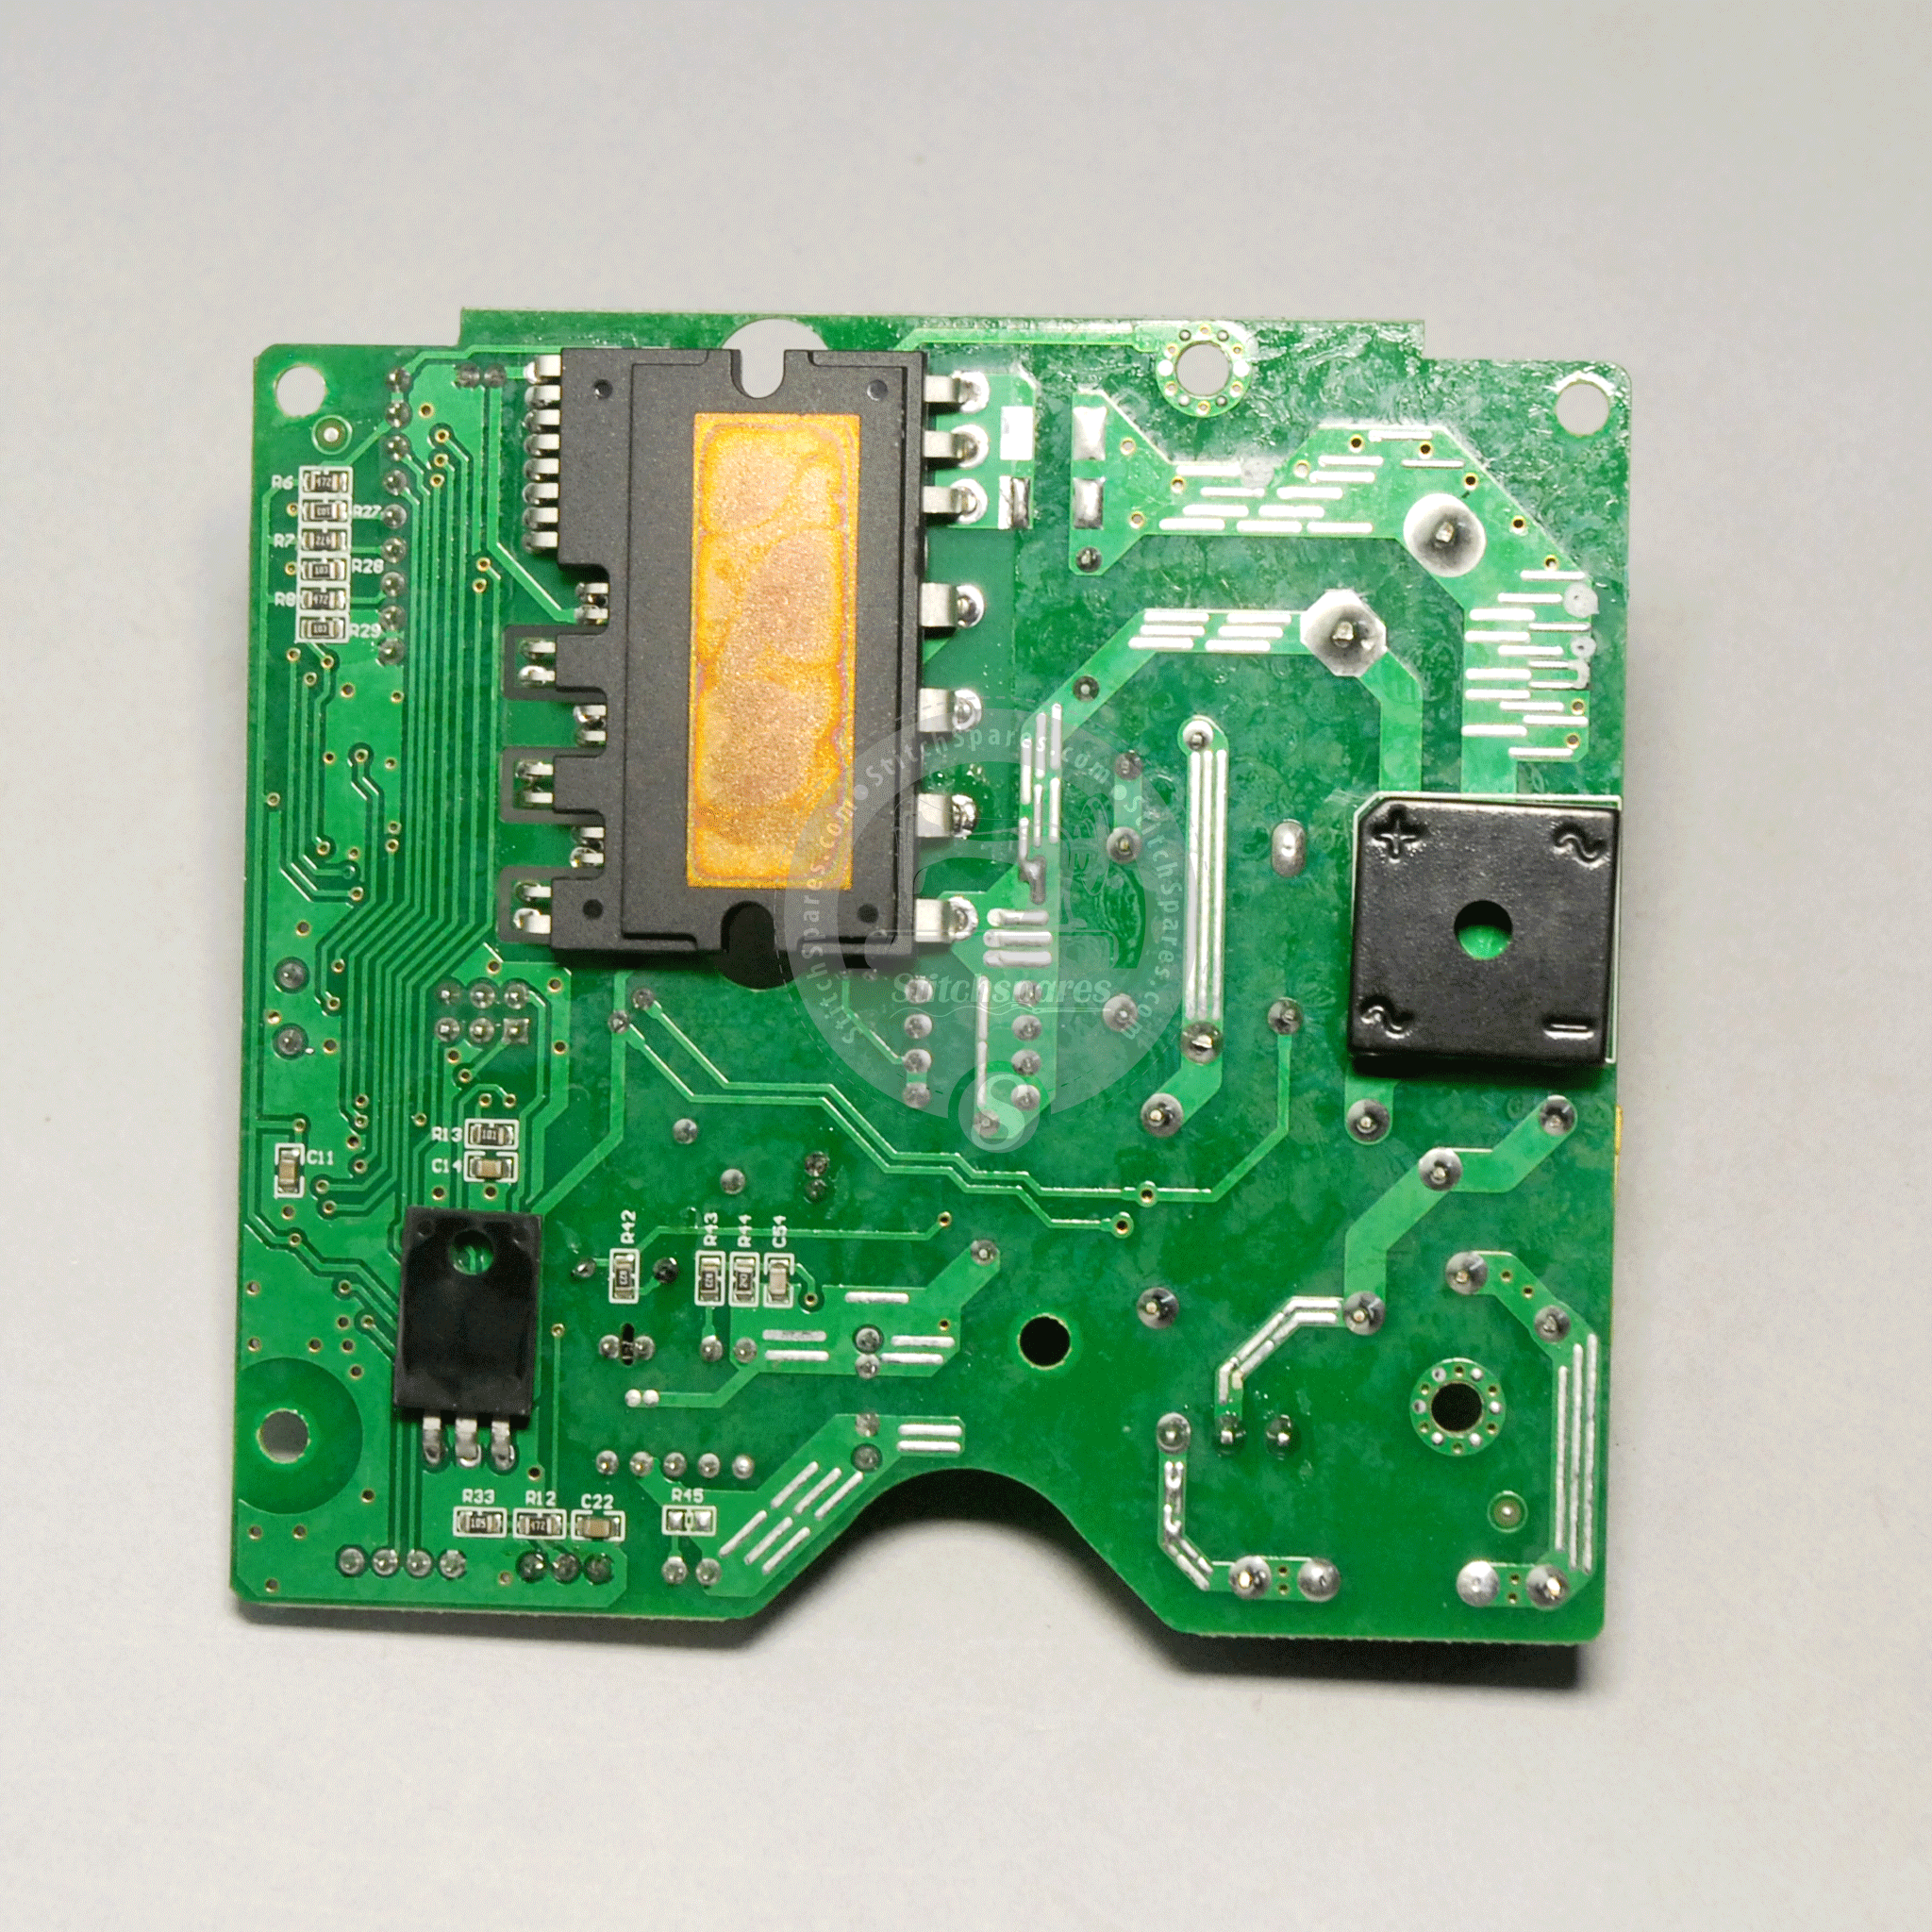 ZB-905 JACK PCB पार्ट #9950017800 (ZB-905-FSB-AIO-V2.3) JACK JK-9100B PCB (904A PCB) कंट्रोल बॉक्स सिंगल नीडल डायरेक्ट ड्राइव लॉकस्टिच मशीन स्पेयर पार्ट्स